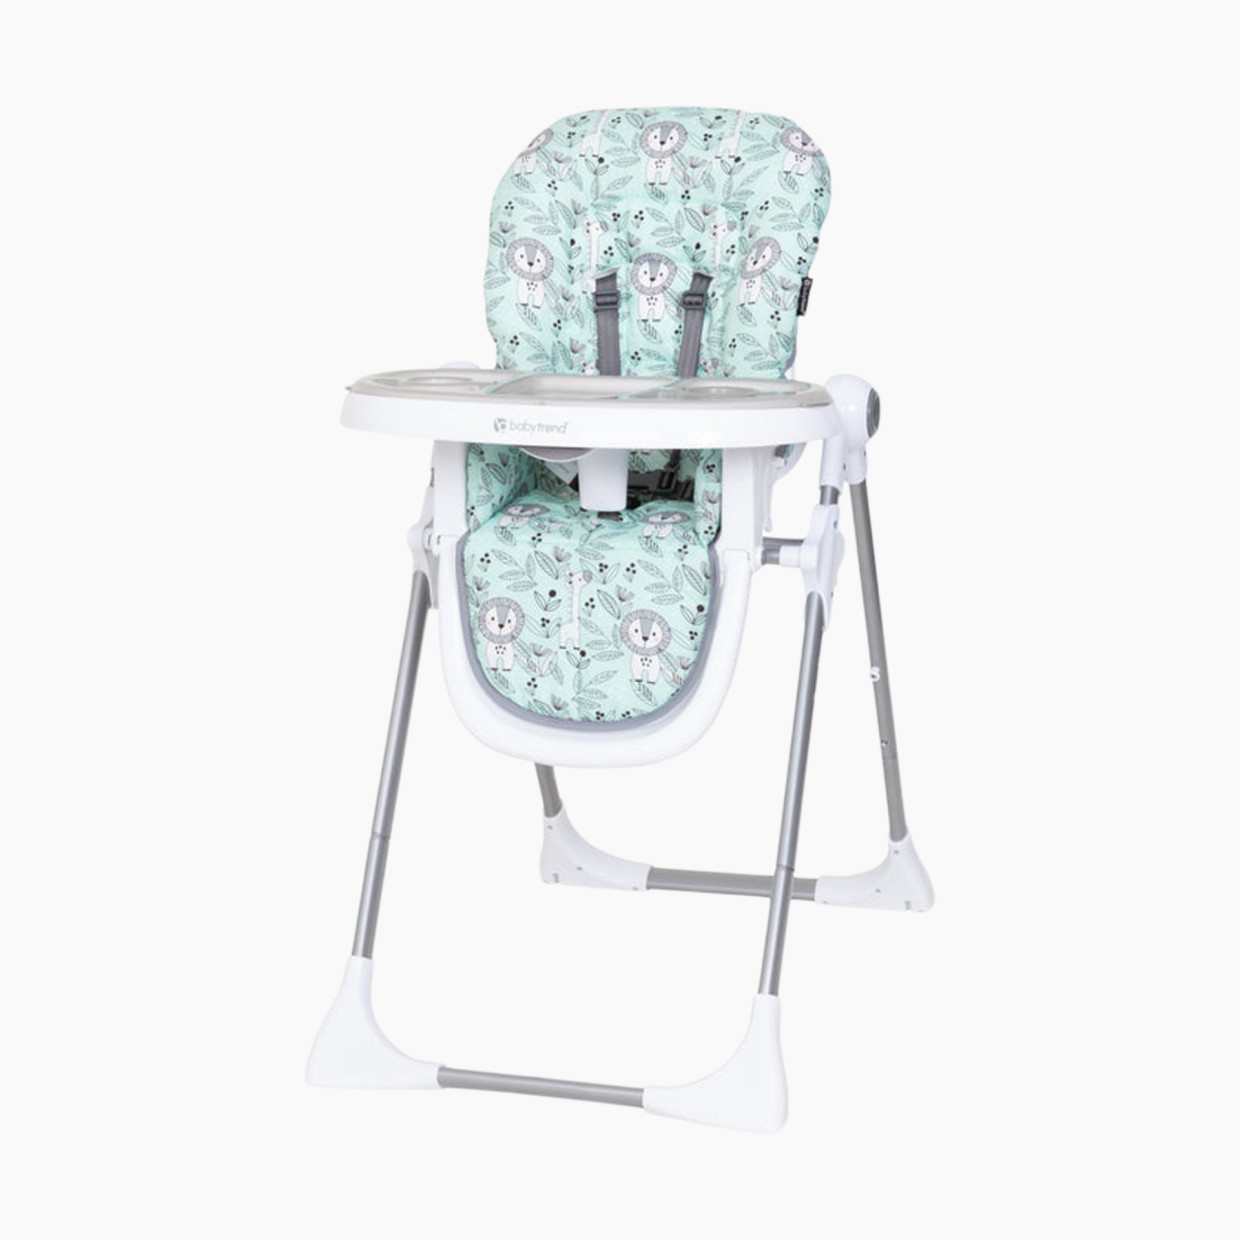 Baby Trend Aspen 4-in-1 High Chair - Hidden Jungle.